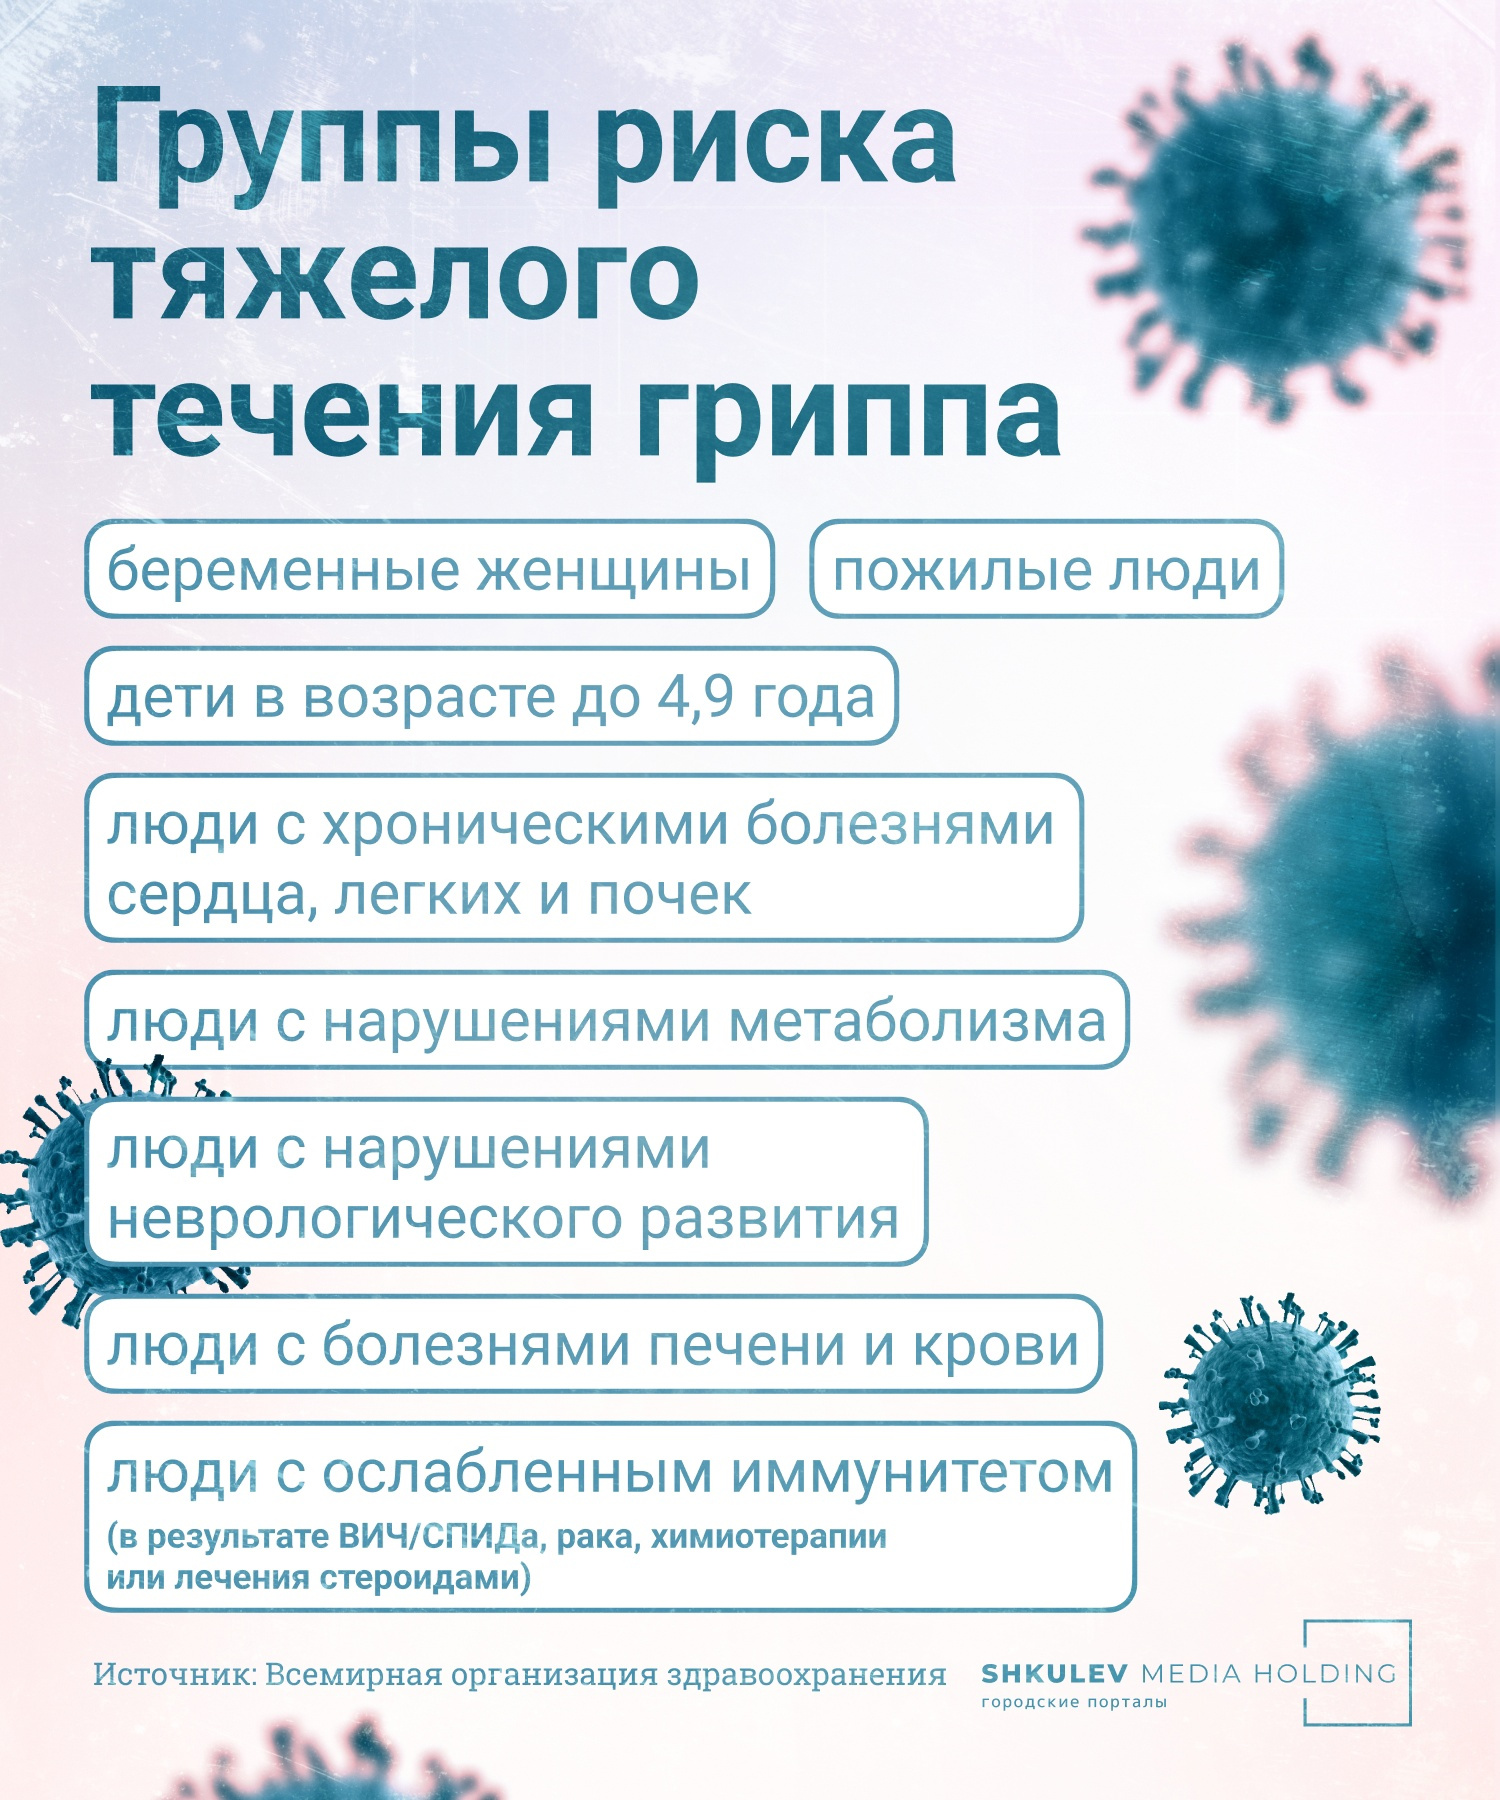 Дети болеют гриппом не так, как взрослые. На <a href="https://29.ru/text/health/2022/12/21/71913893/" class="_" target="_blank">какие симптомы</a> родителям надо обратить внимание